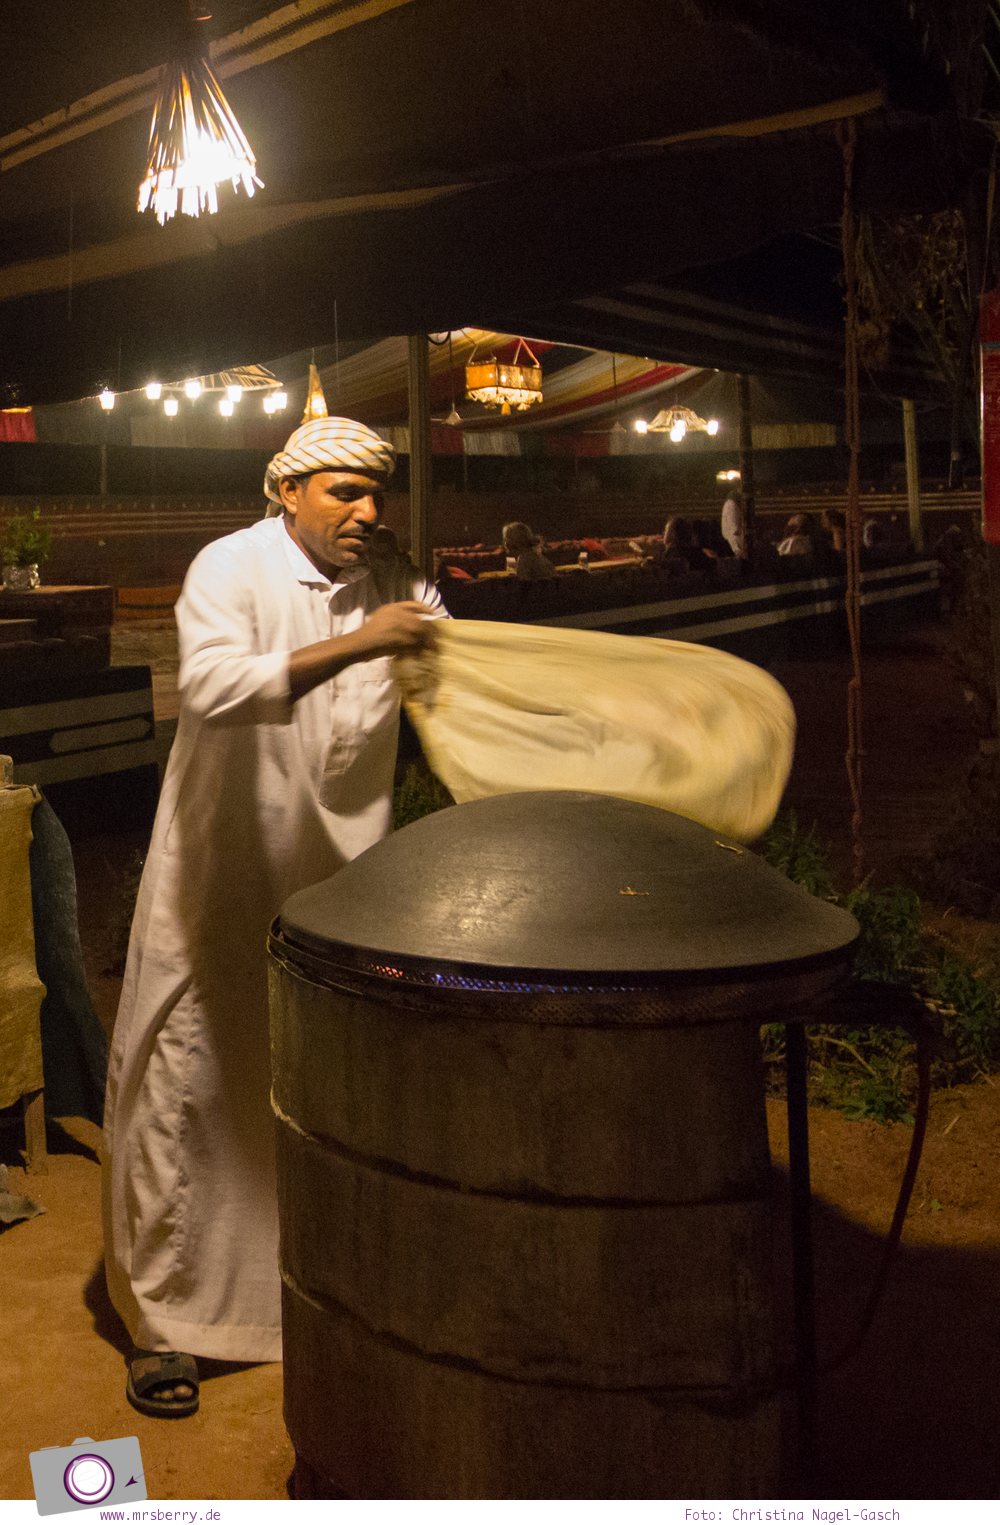 Rundreise Jordanien - ein Reisebericht: Besouinen Barbecue "Zarb" im Wadi Rum